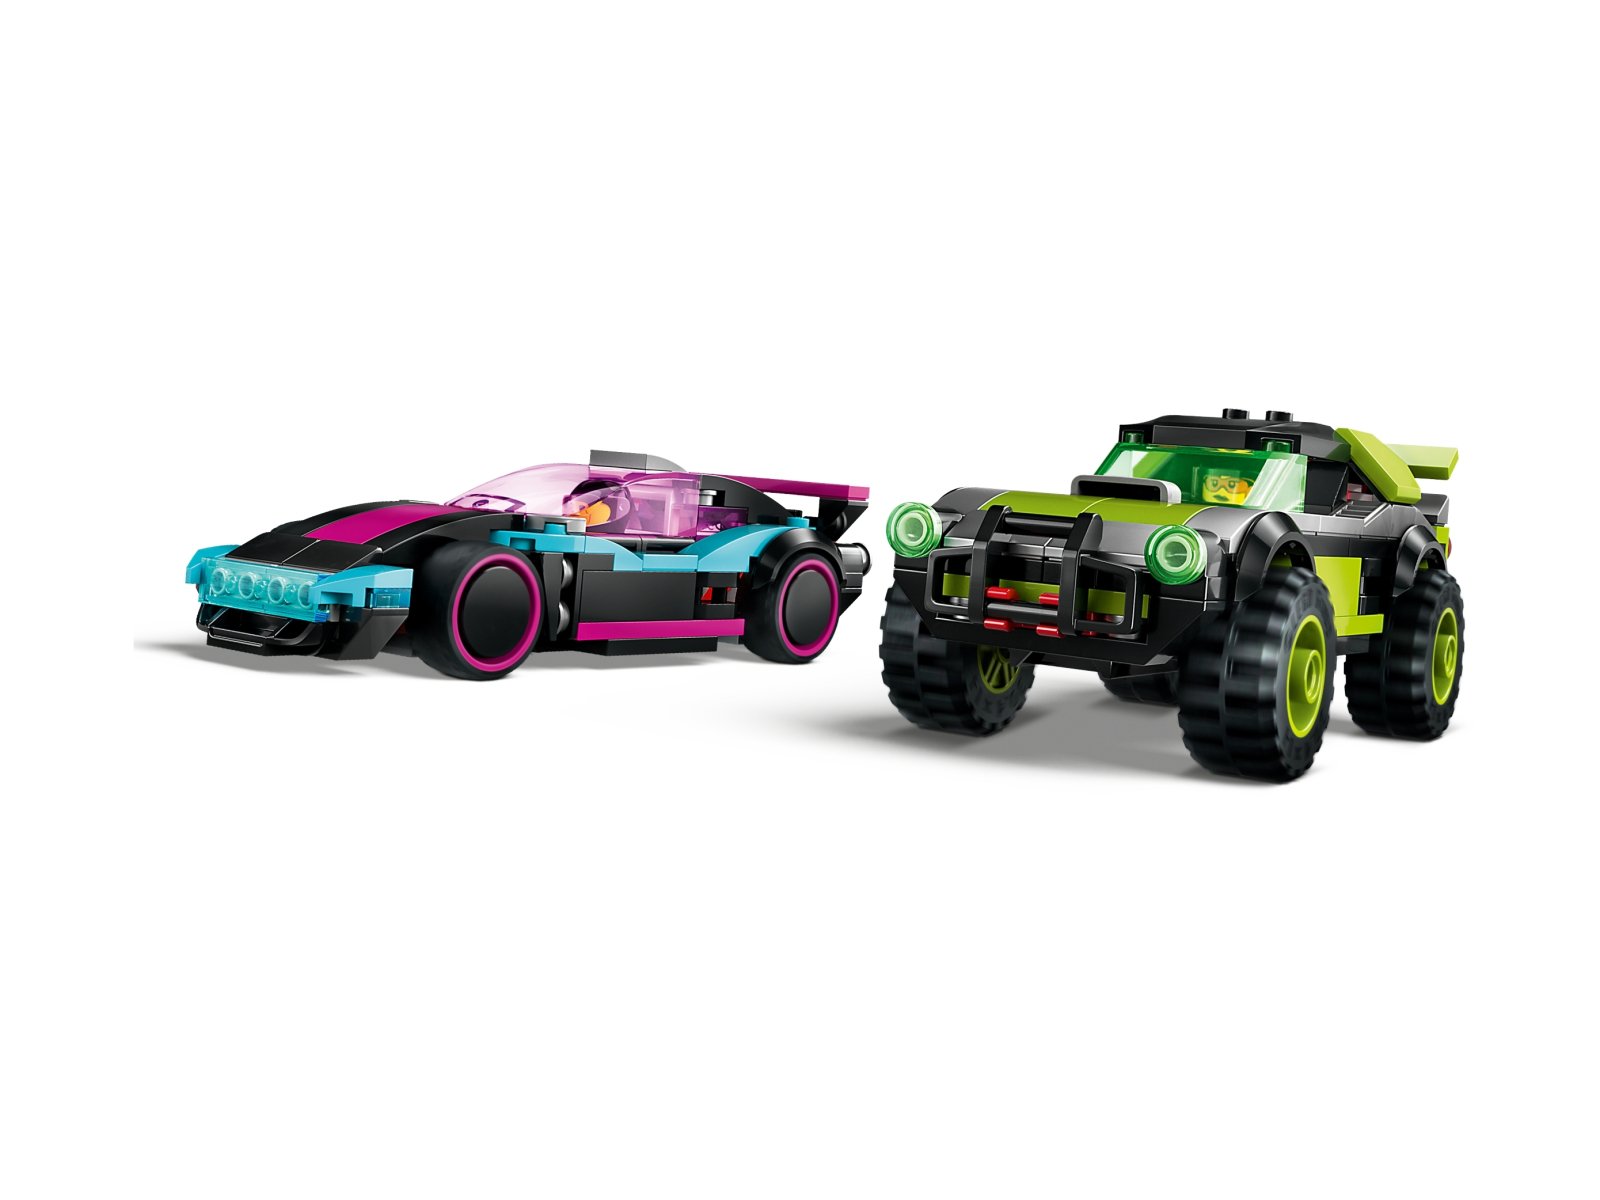 LEGO City Podrasowane samochody wyścigowe 60396